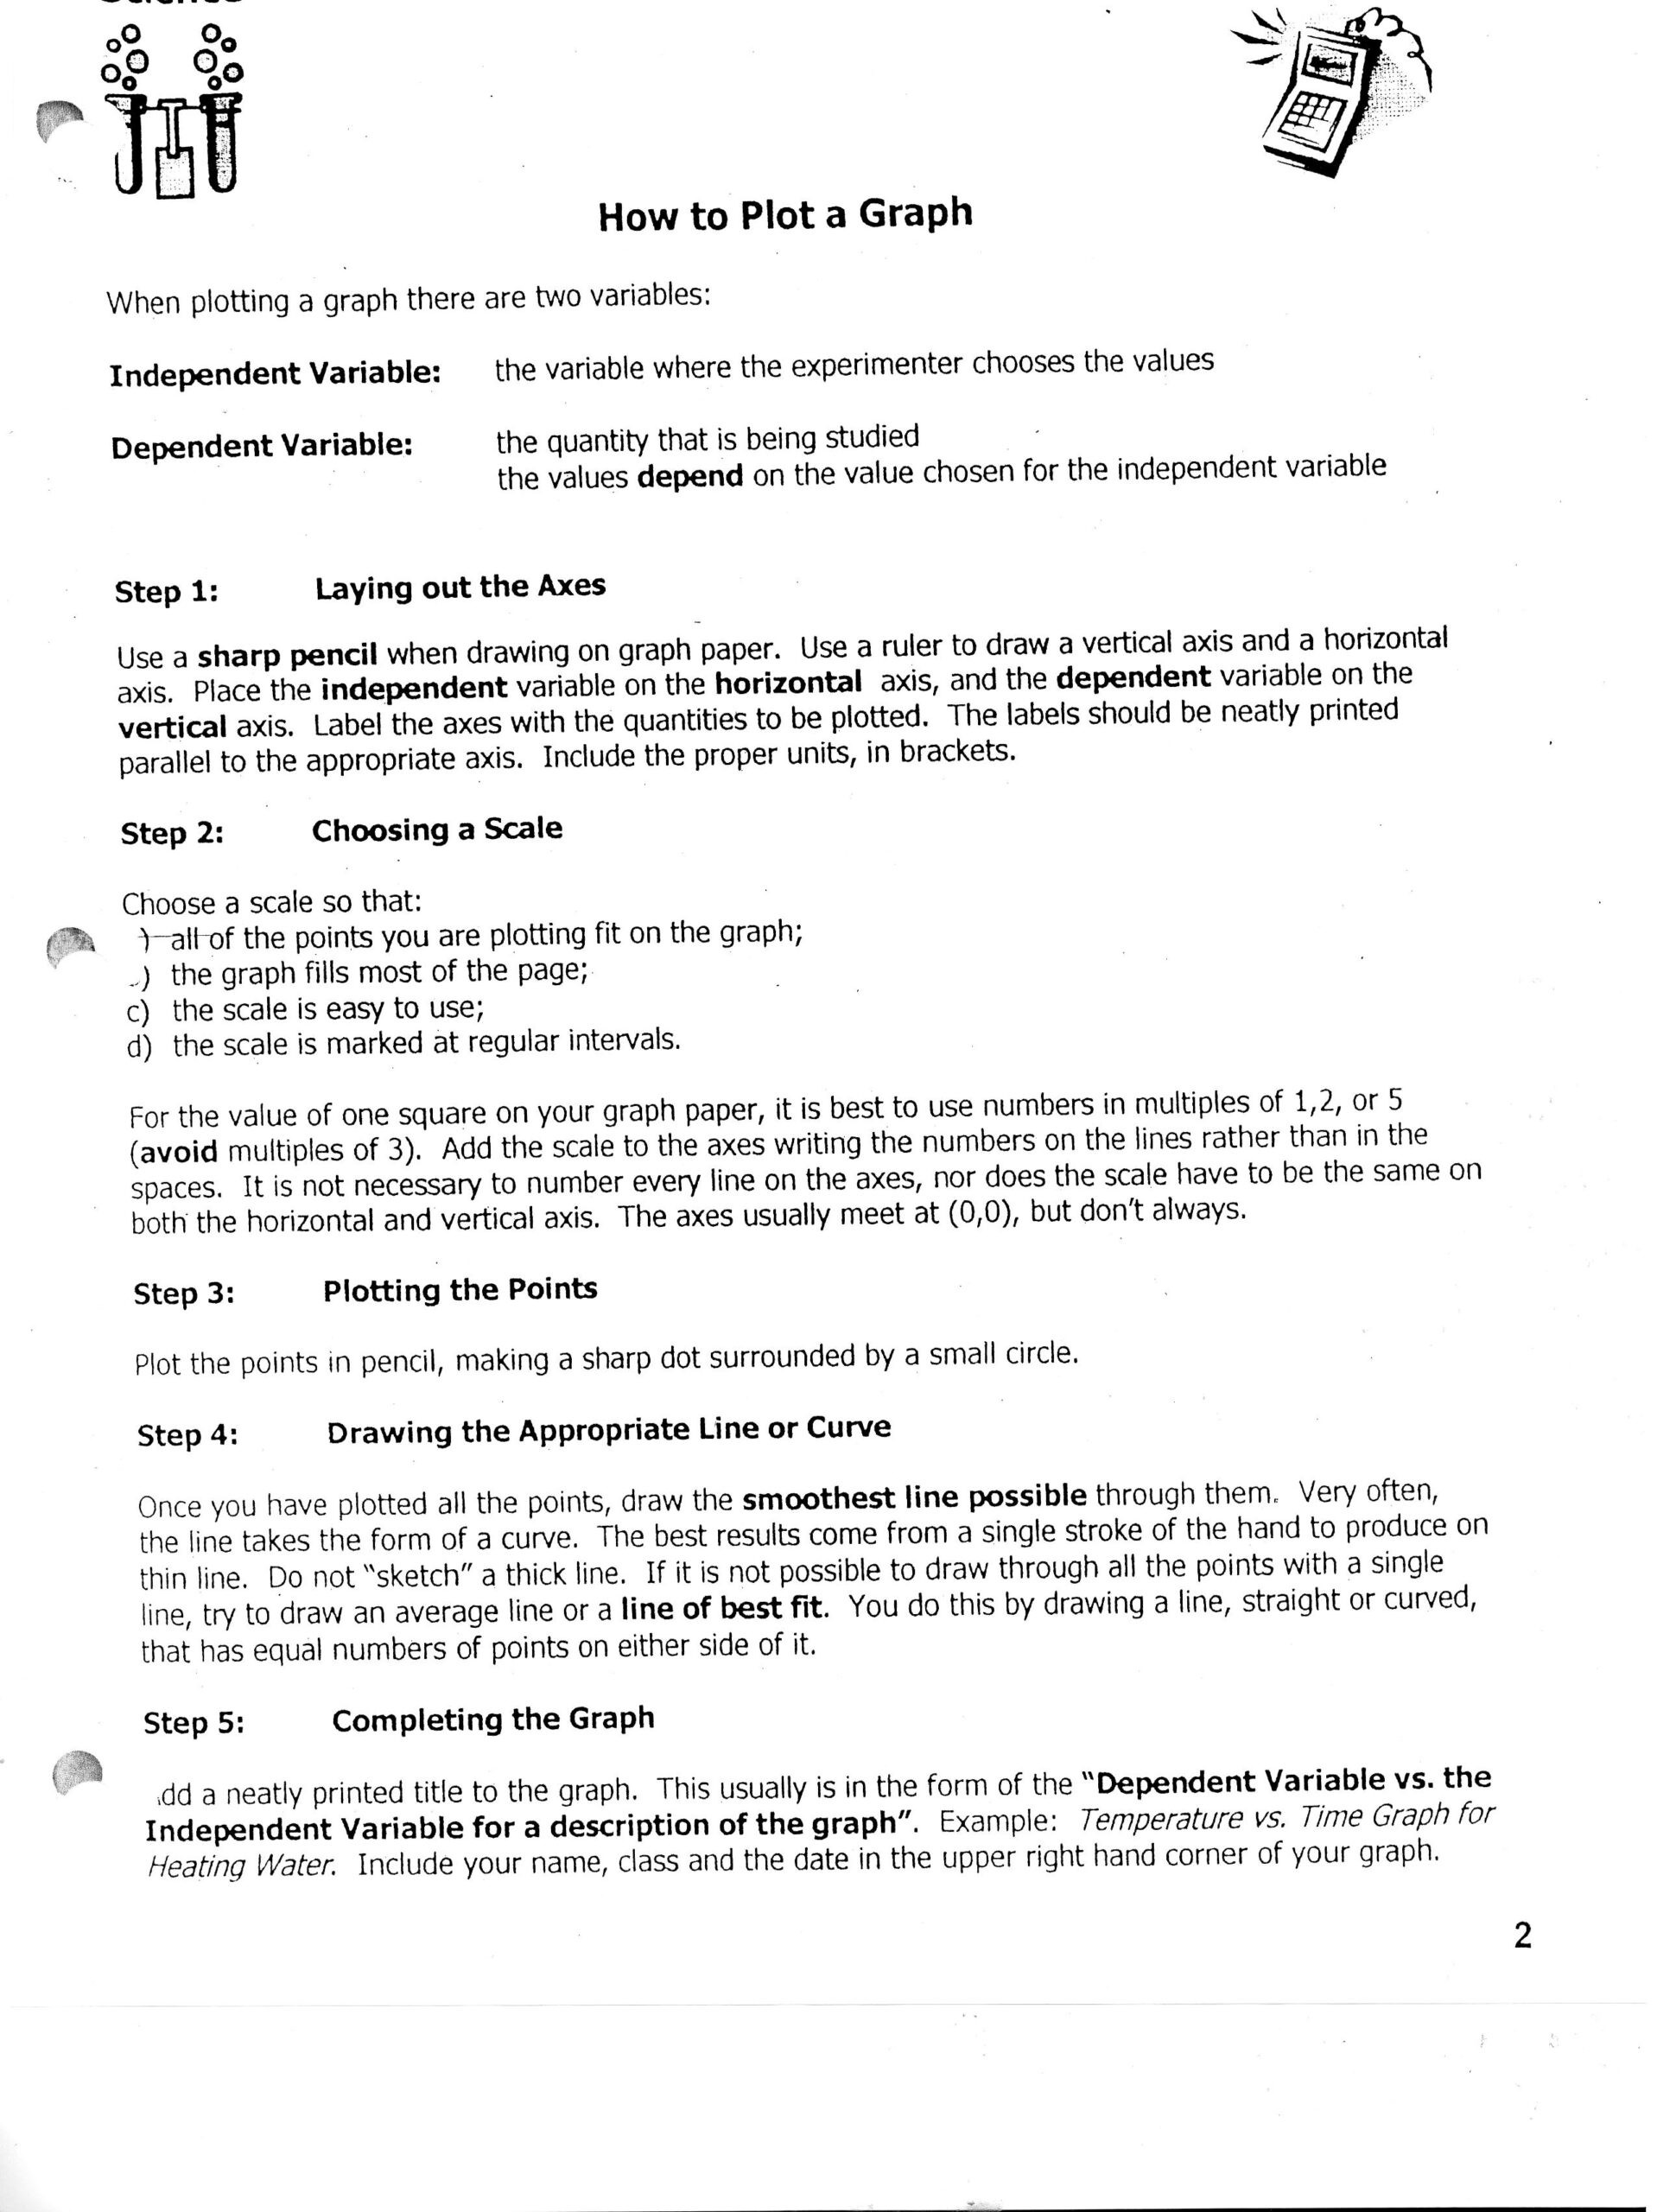 Scientific Method Practice Worksheet Identifying Variables Worksheet Answers Printable Worksheets